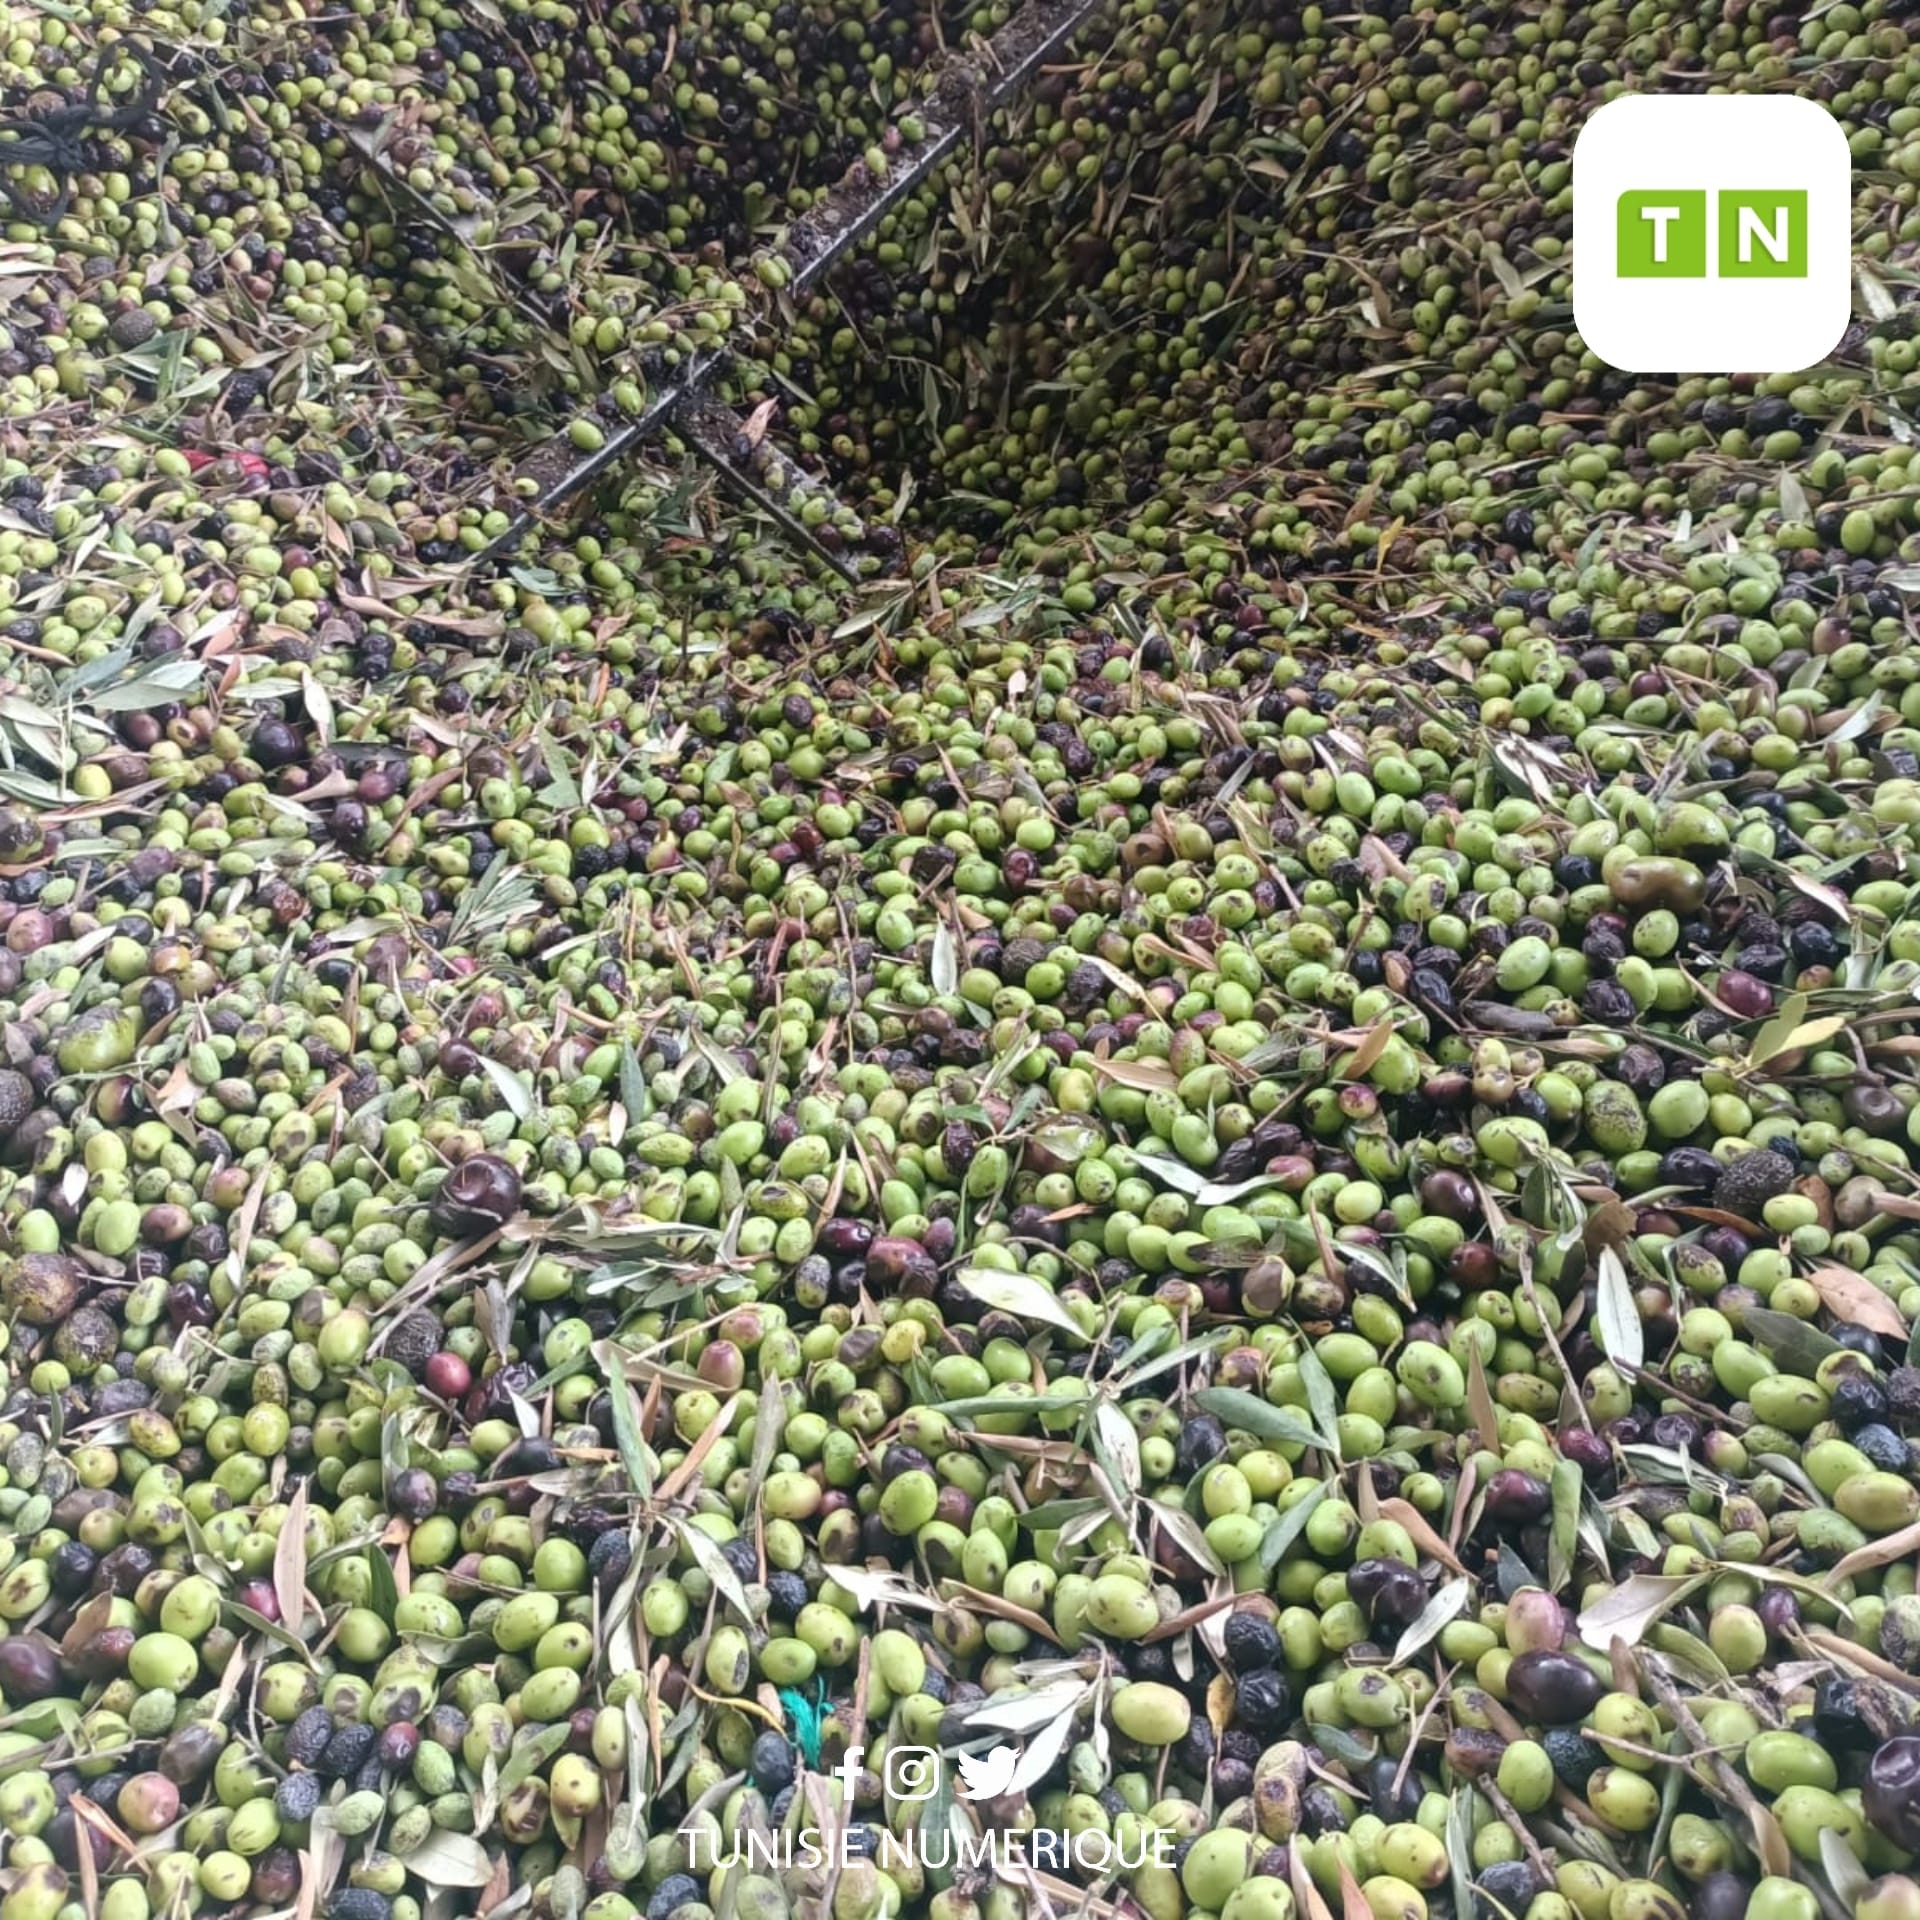 La récolte des olives est estimée à 29 mille tonnes à Zaghouan